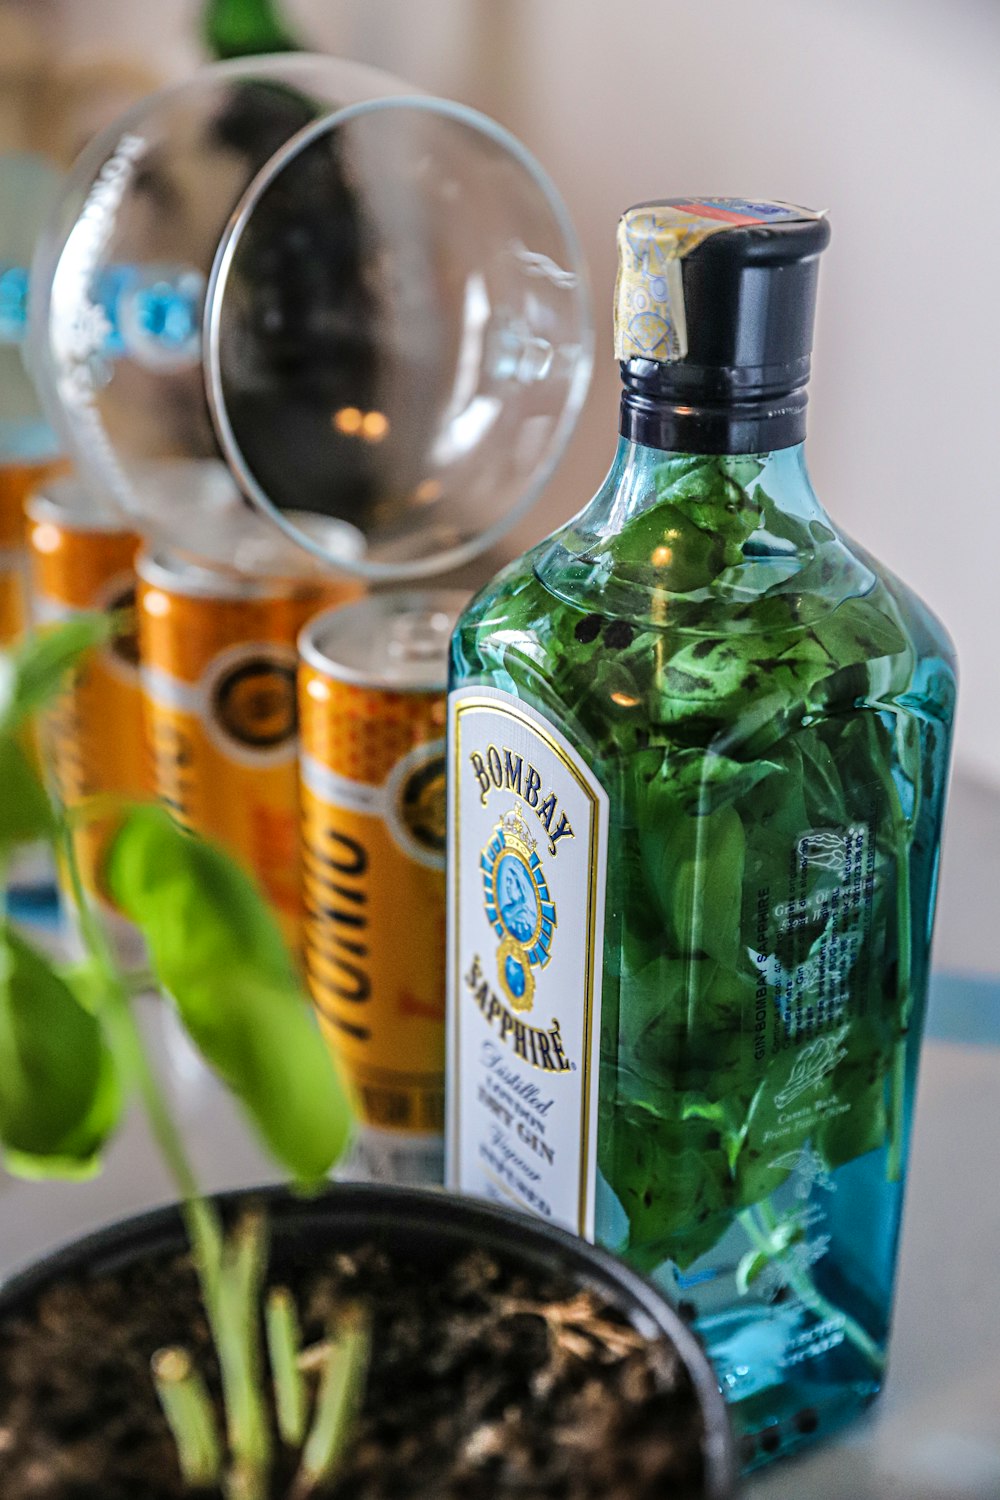 green glass bottle beside clear glass bottle